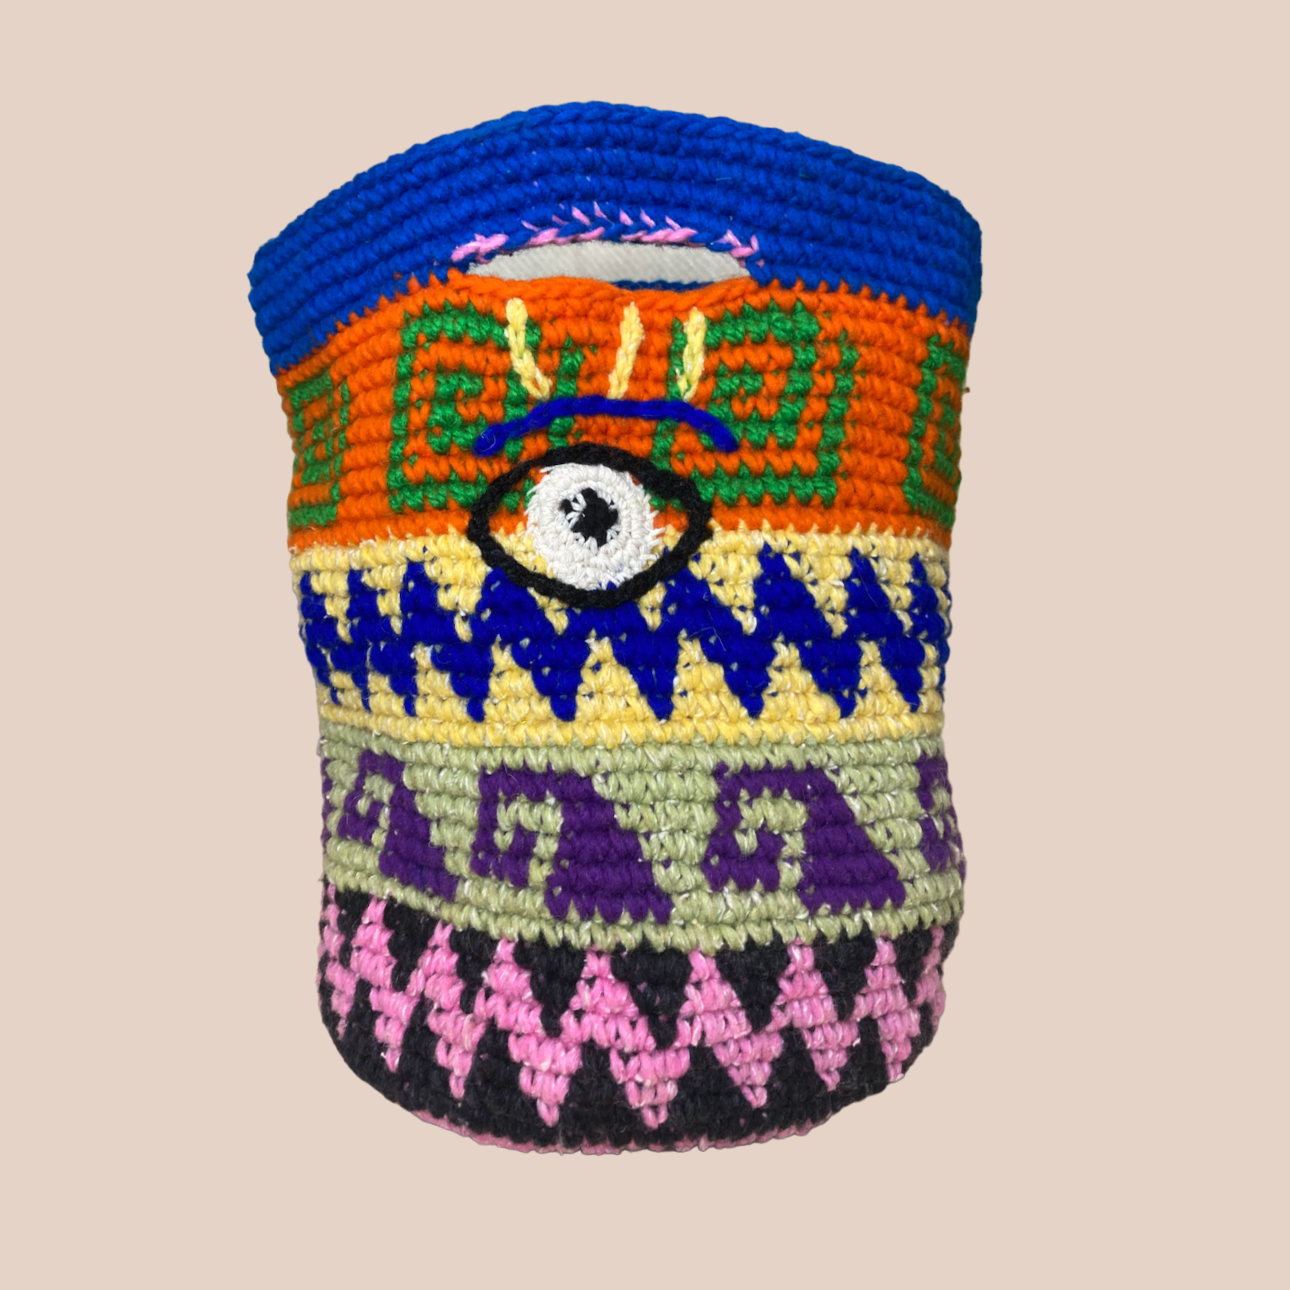  Image du sac motifs oeil de Maison Badigo, sac en laine crocheté multicolore unique et tendance